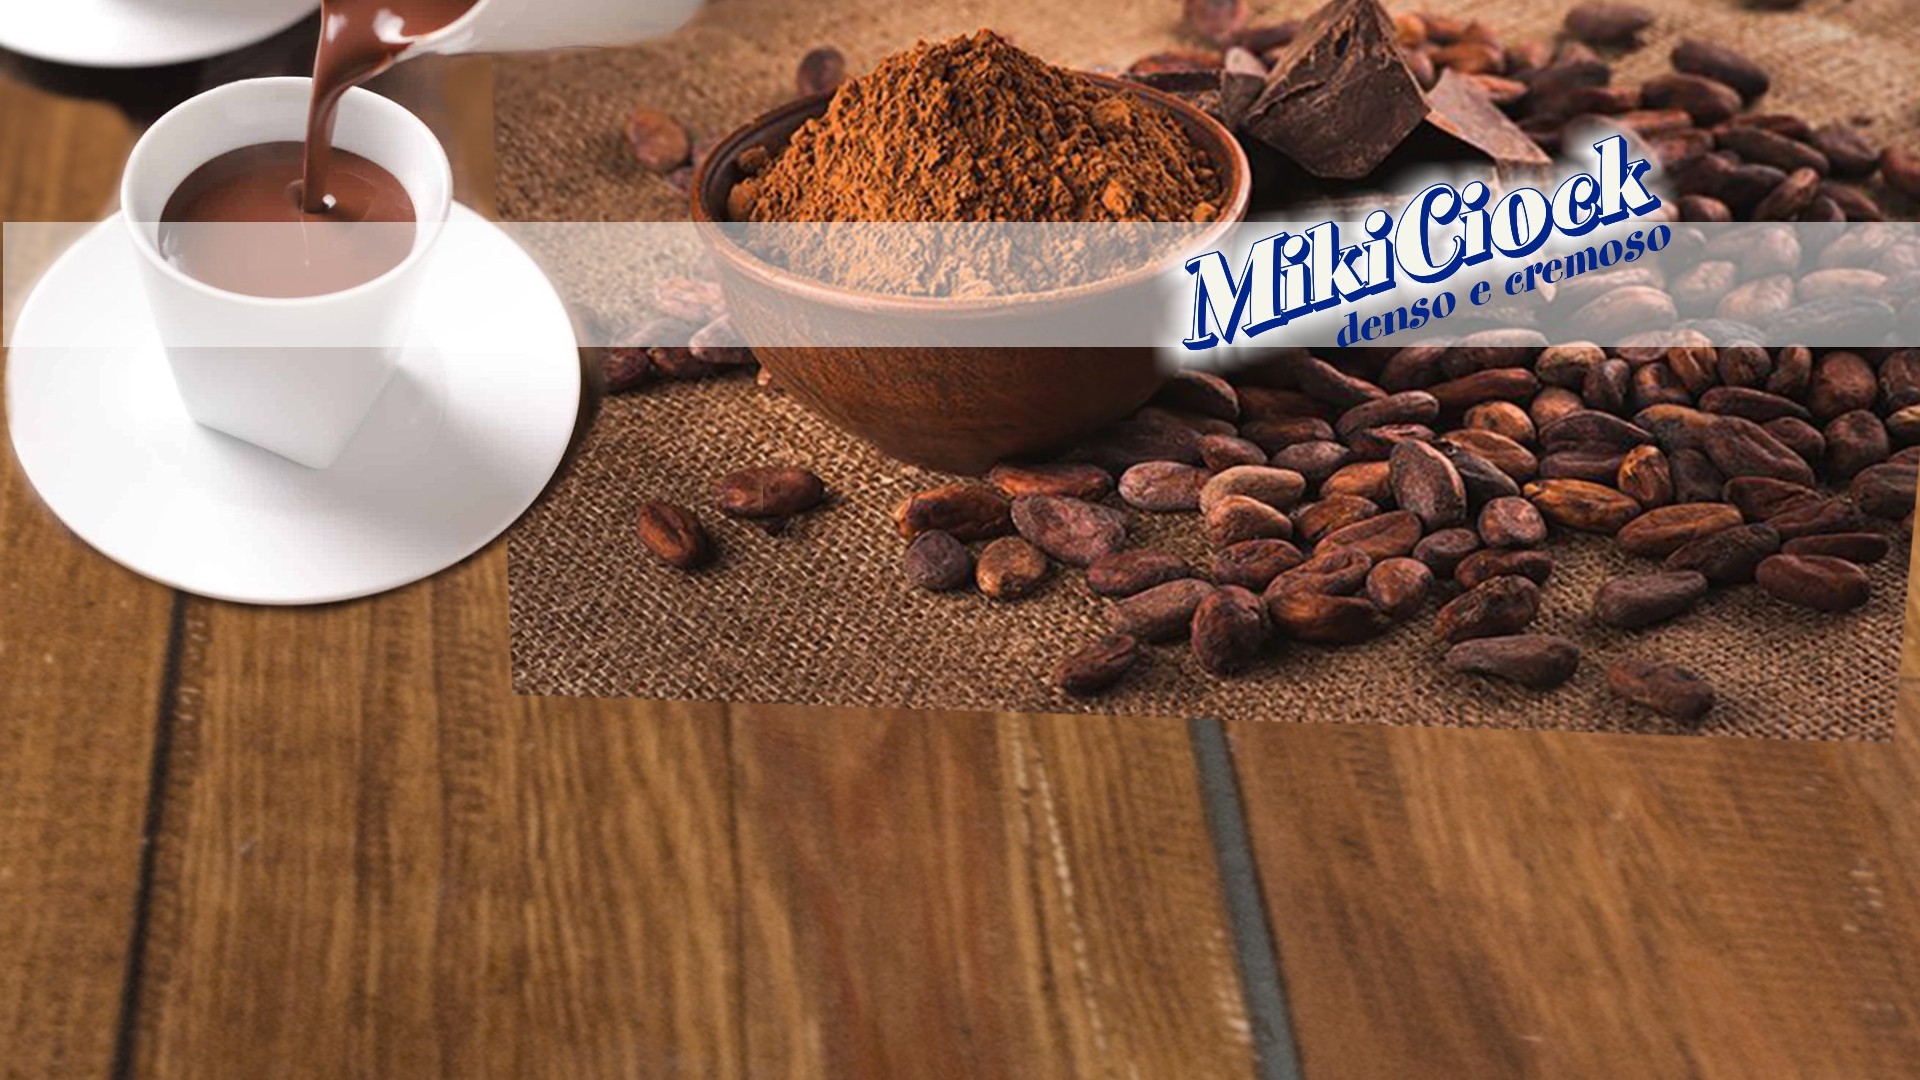 MikiCiock Denso e Cremoso - Preparato per Cioccolata Calda in Tazza